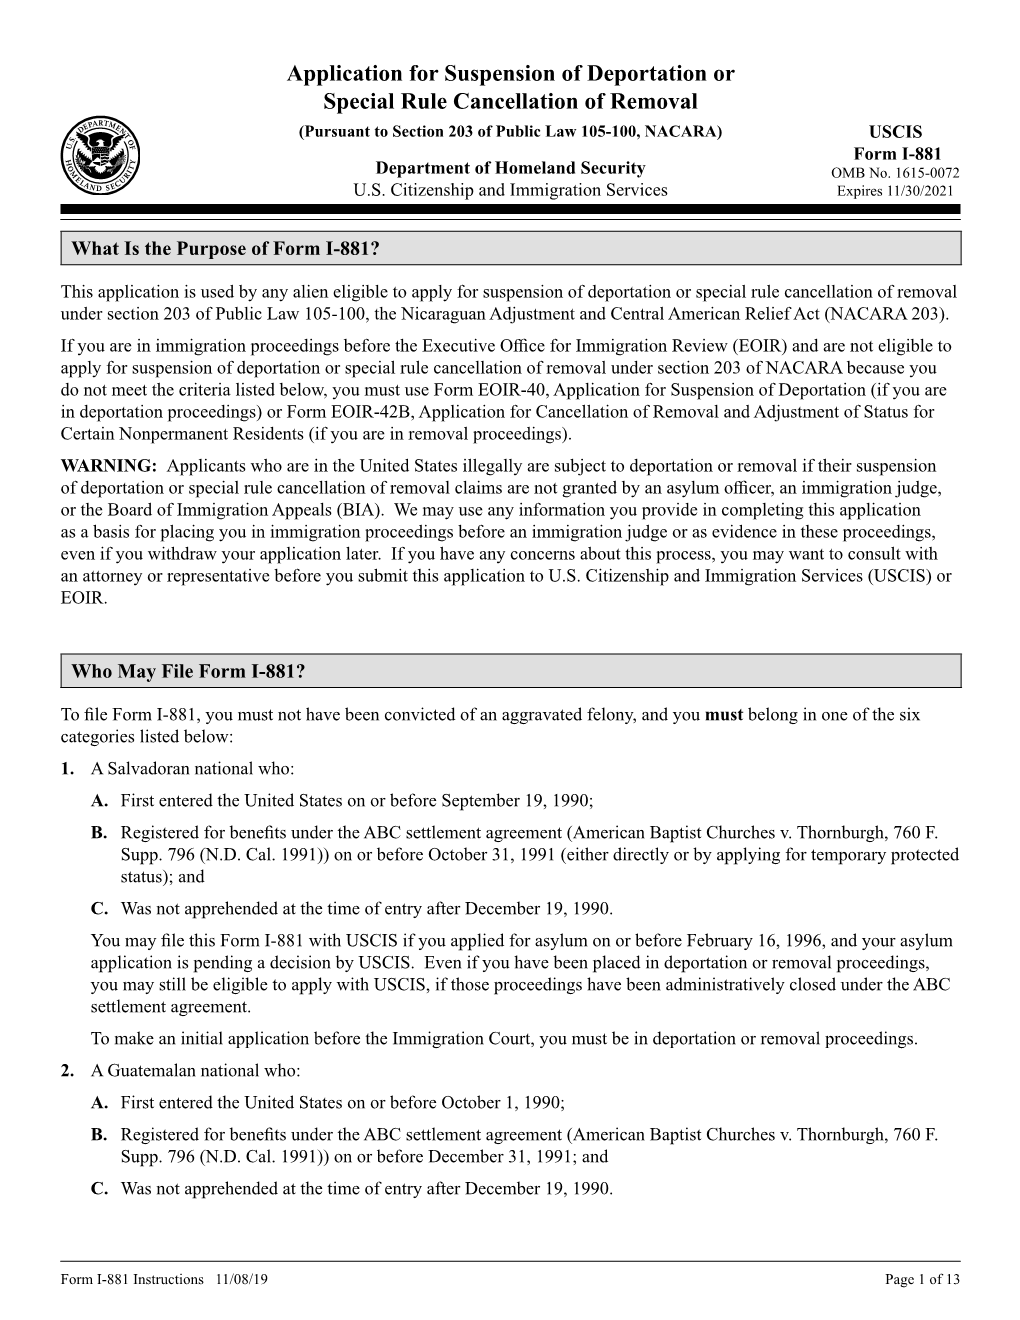 Form I-881, Application for Suspension of Deportation